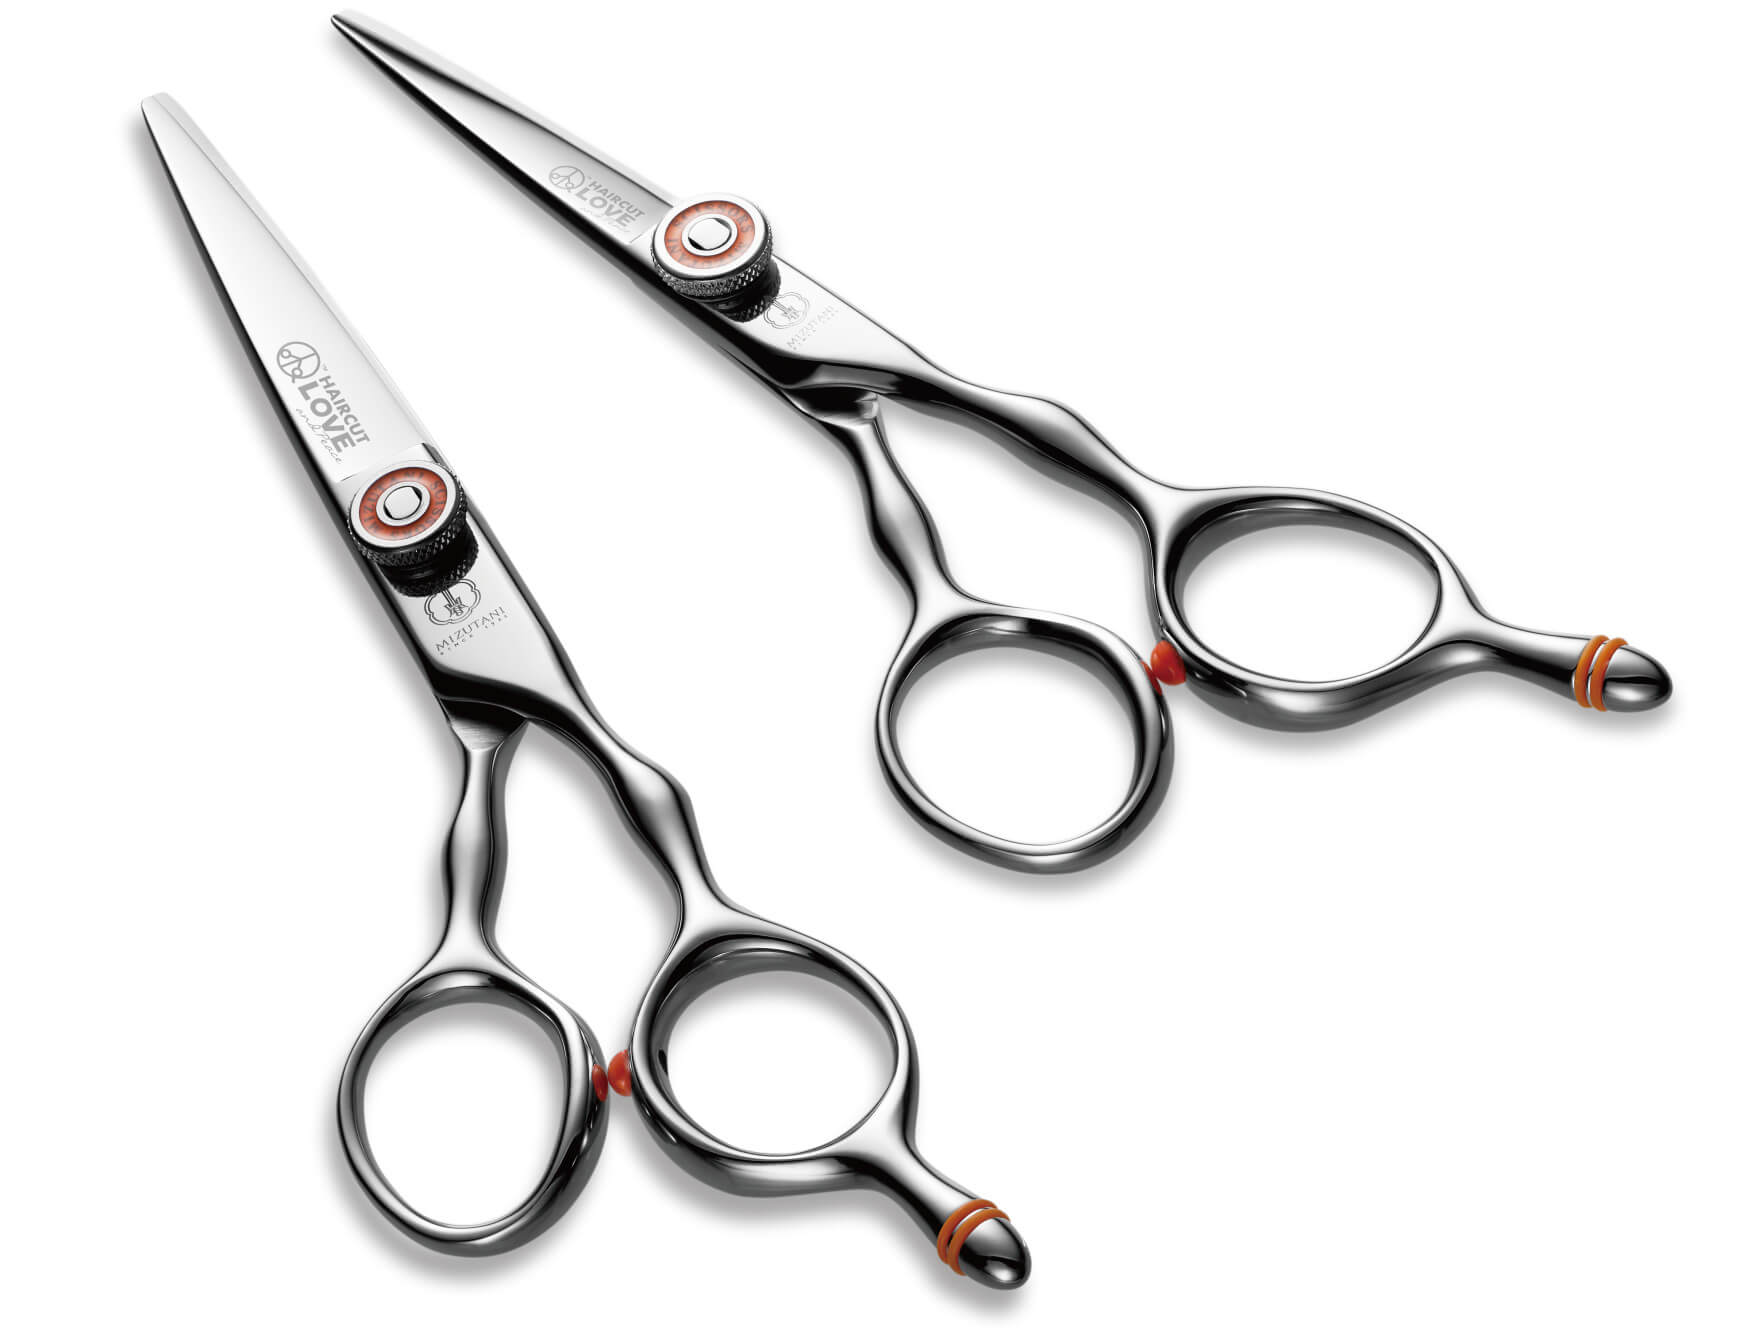 hair-cut-scissors